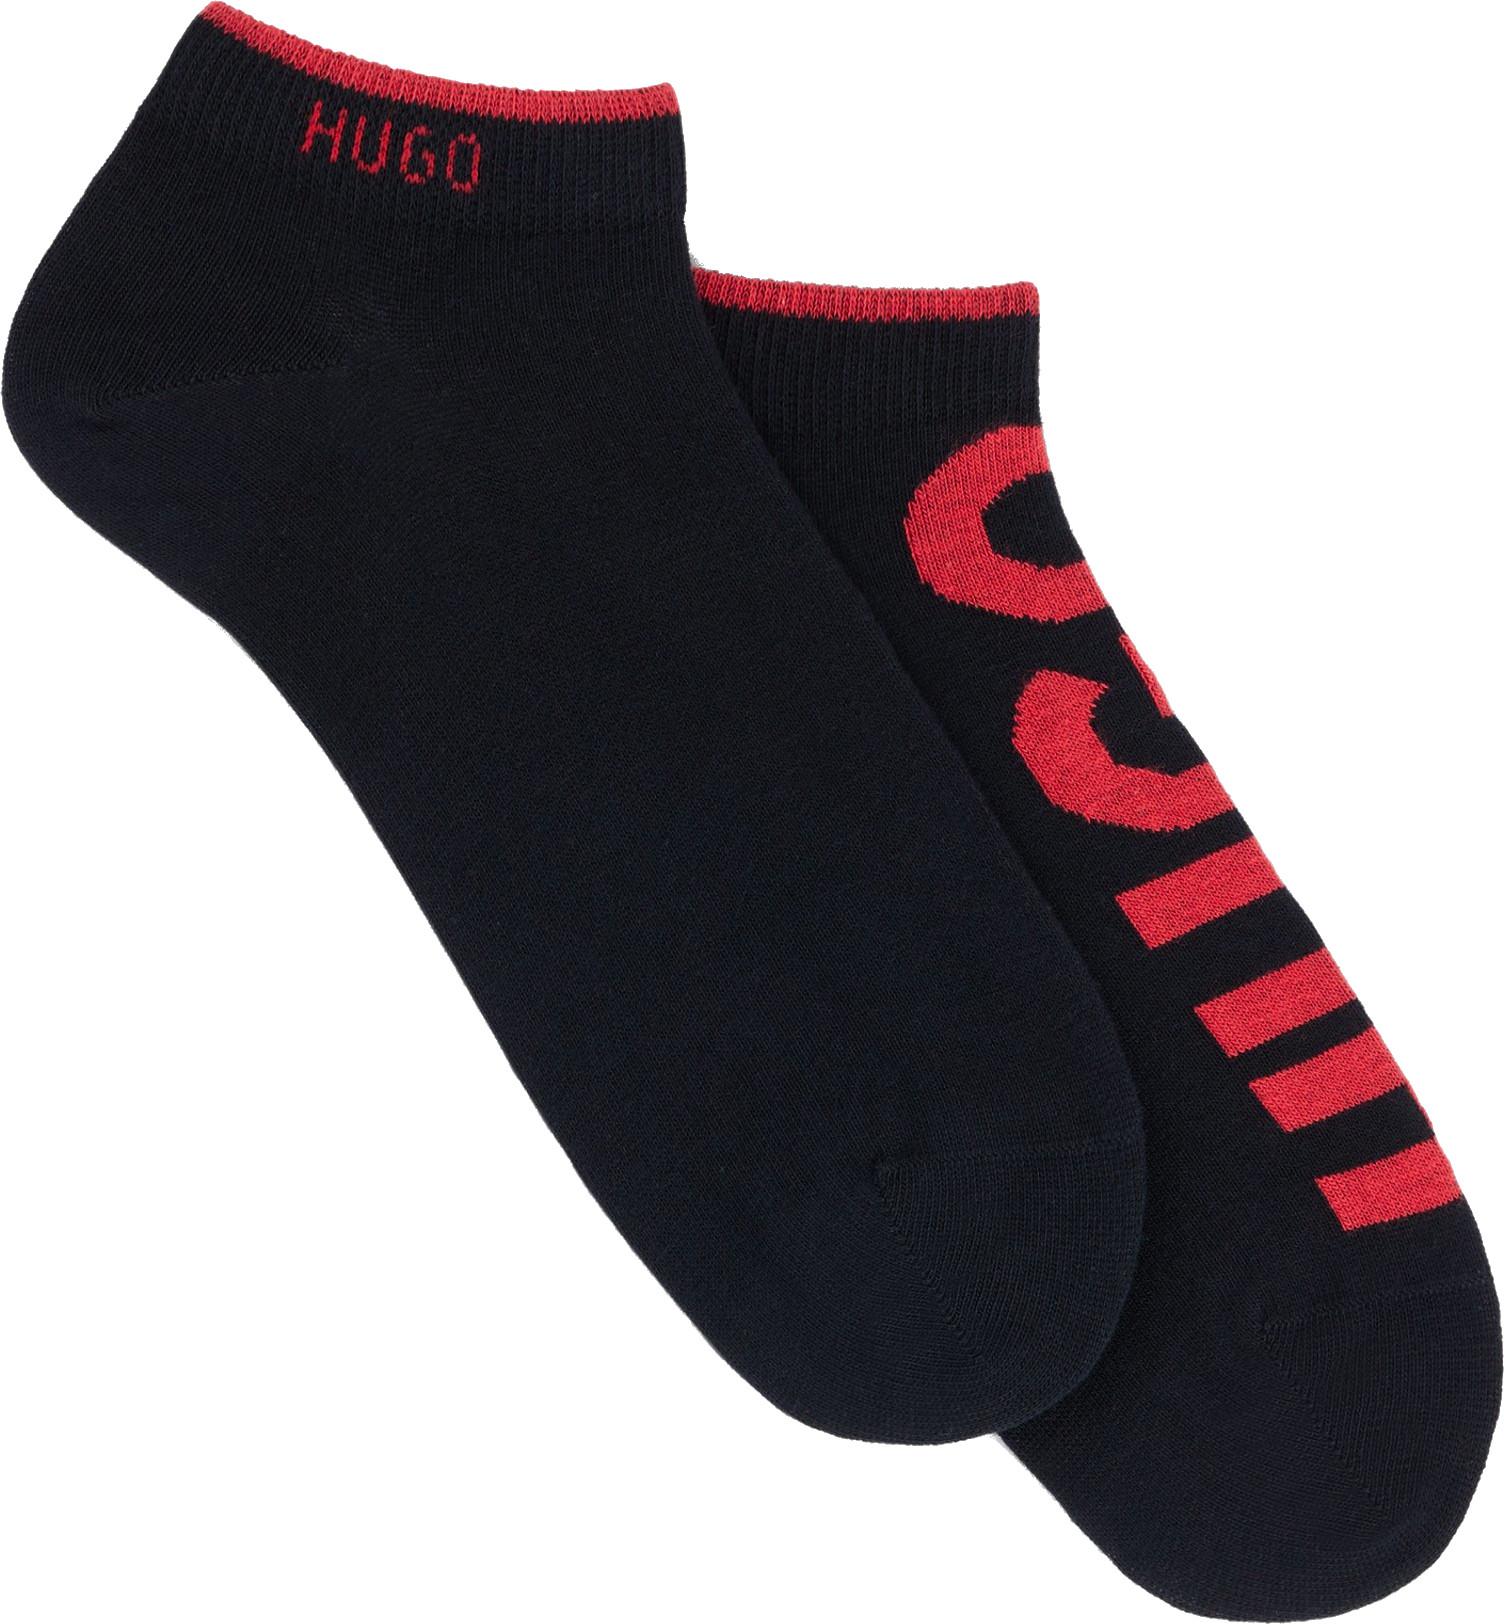 Hugo Boss 2 PACK - pánské ponožky HUGO 50468111-001 43-46